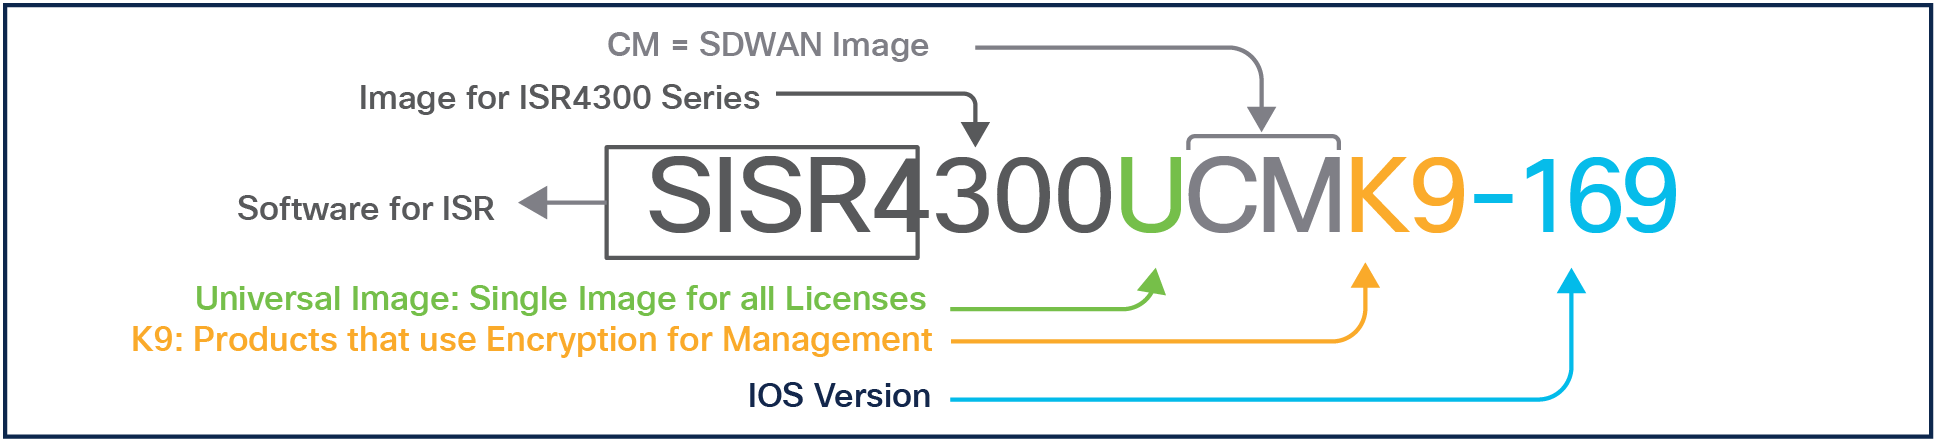 Selecting a Cisco IOS type for the SD-WAN Bundles (Cisco IOS XE-SDWAN)